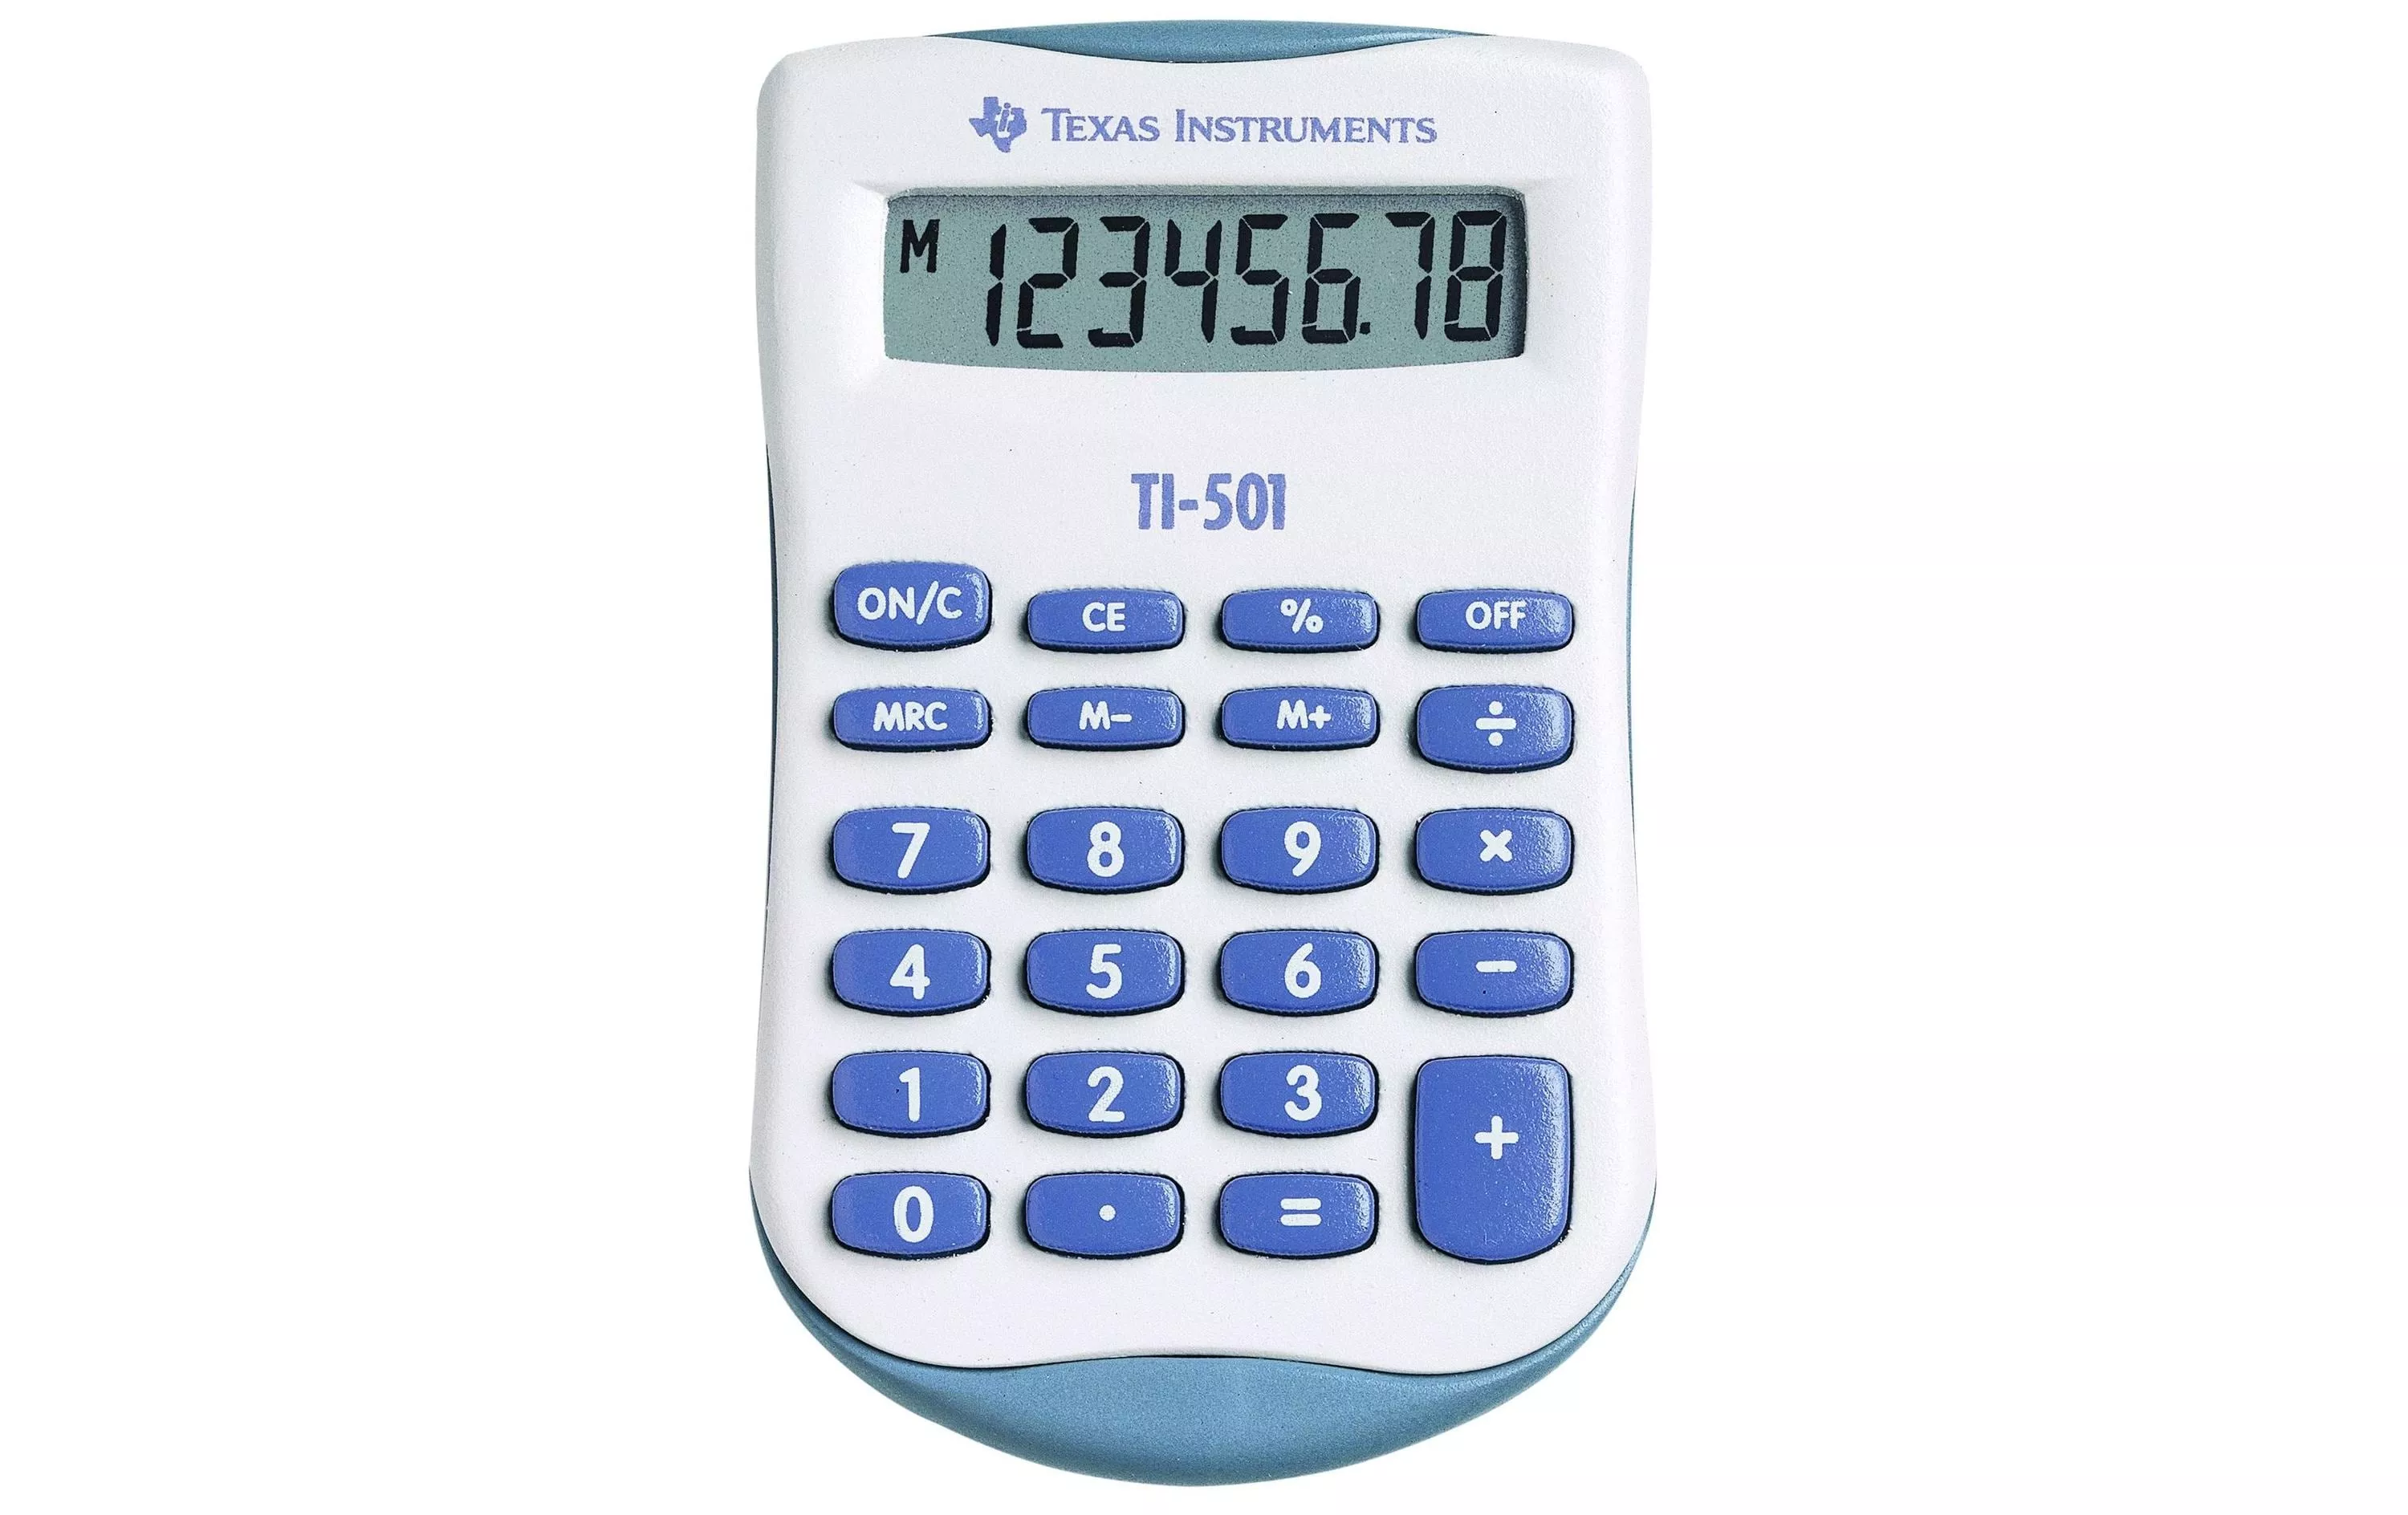 Calcolatrice Texas Instruments TI-501